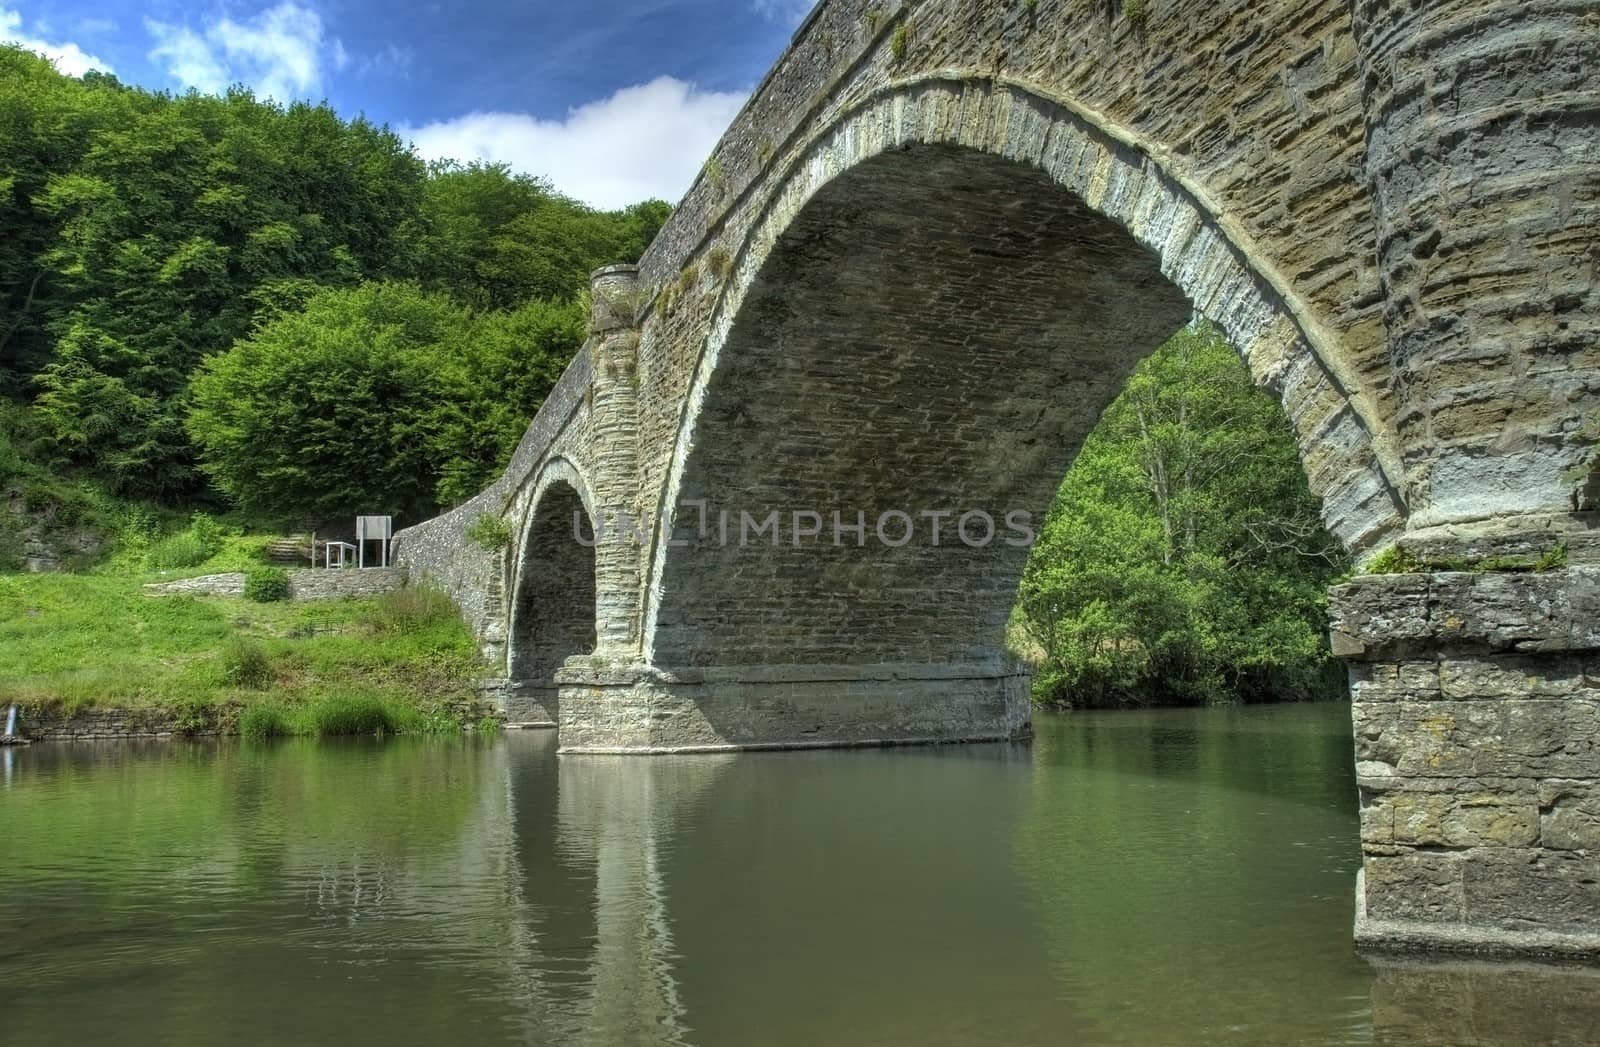 Dinham Bridge near Ludlow Castle, Shropshire, England.